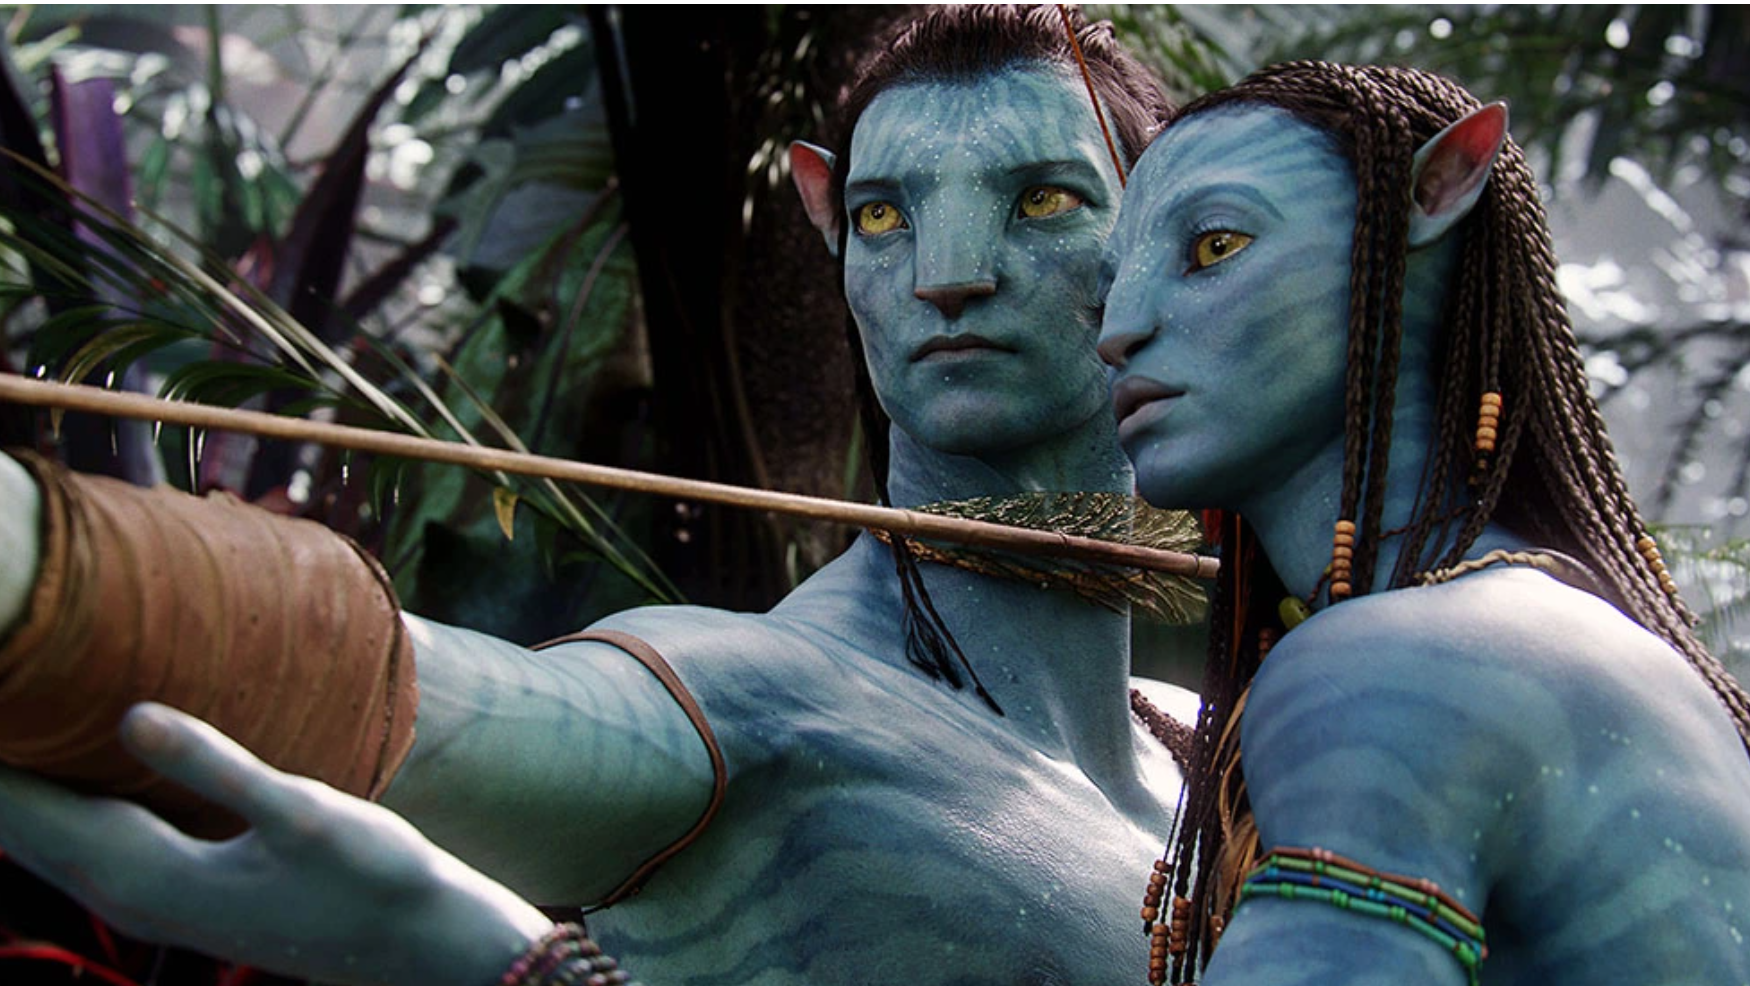 A still from "Avatar" (2009)